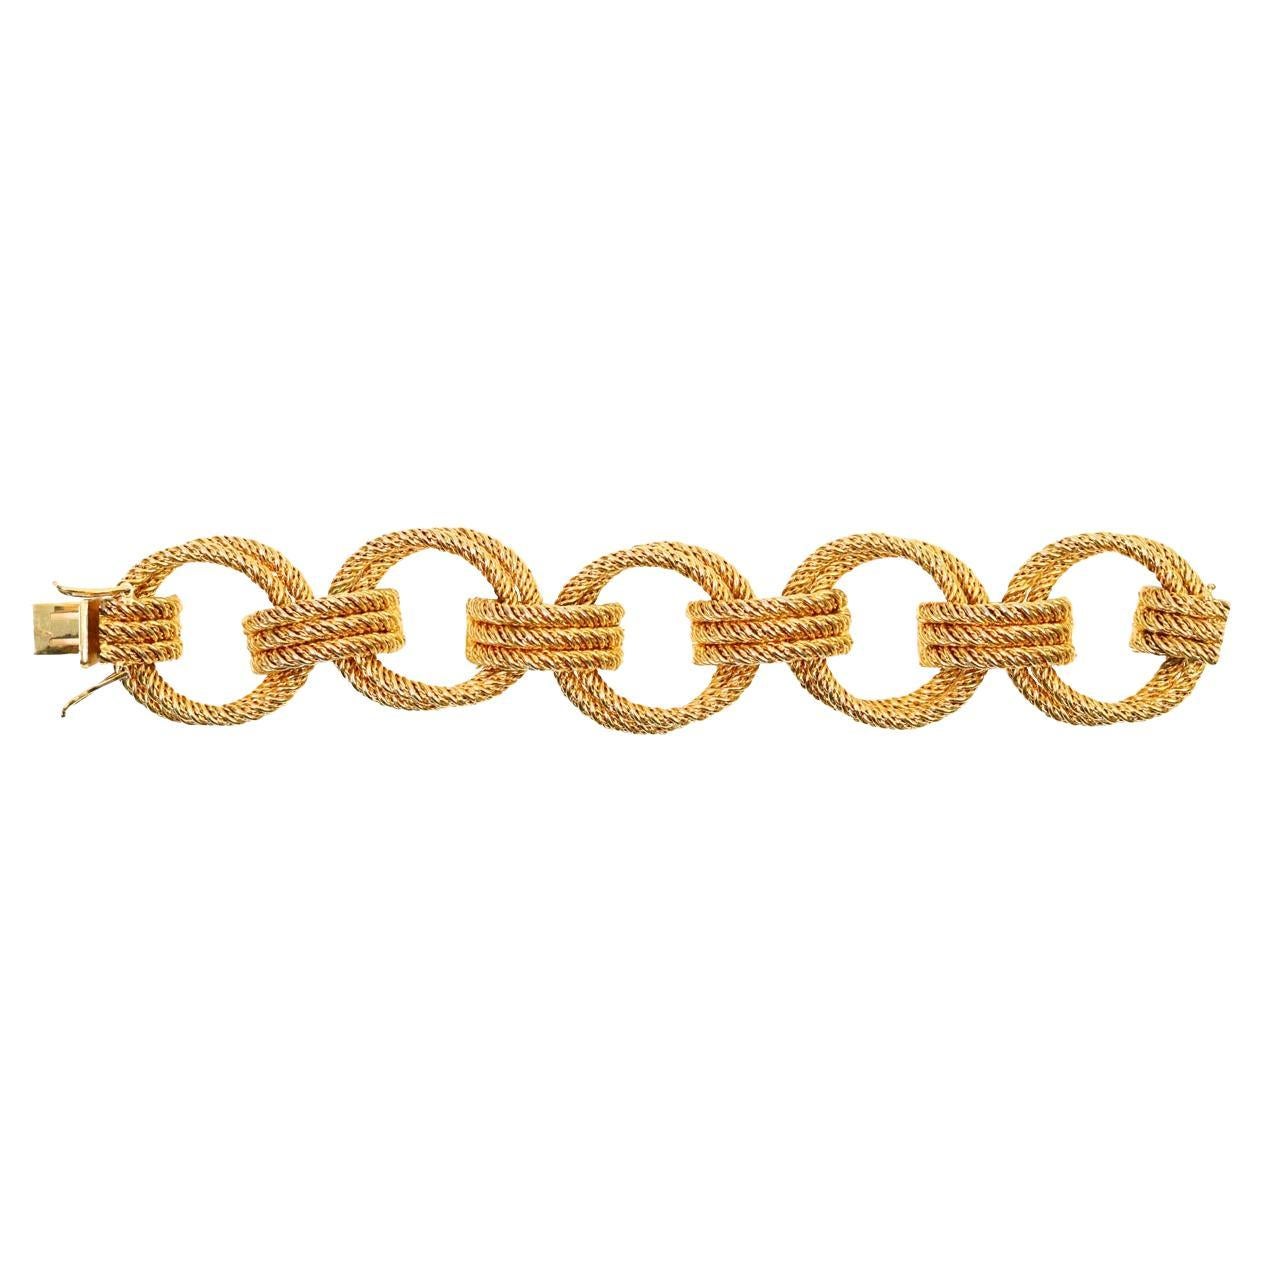 Vintage Grosse Germany Rope Link Bracelet Circa 1967. Ce bracelet est composé de maillons rigides doubles ronds et de trois maillons qui font le tour au milieu pour l'attacher.  Il est superbe et se marierait à merveille avec n'importe quoi.  Un